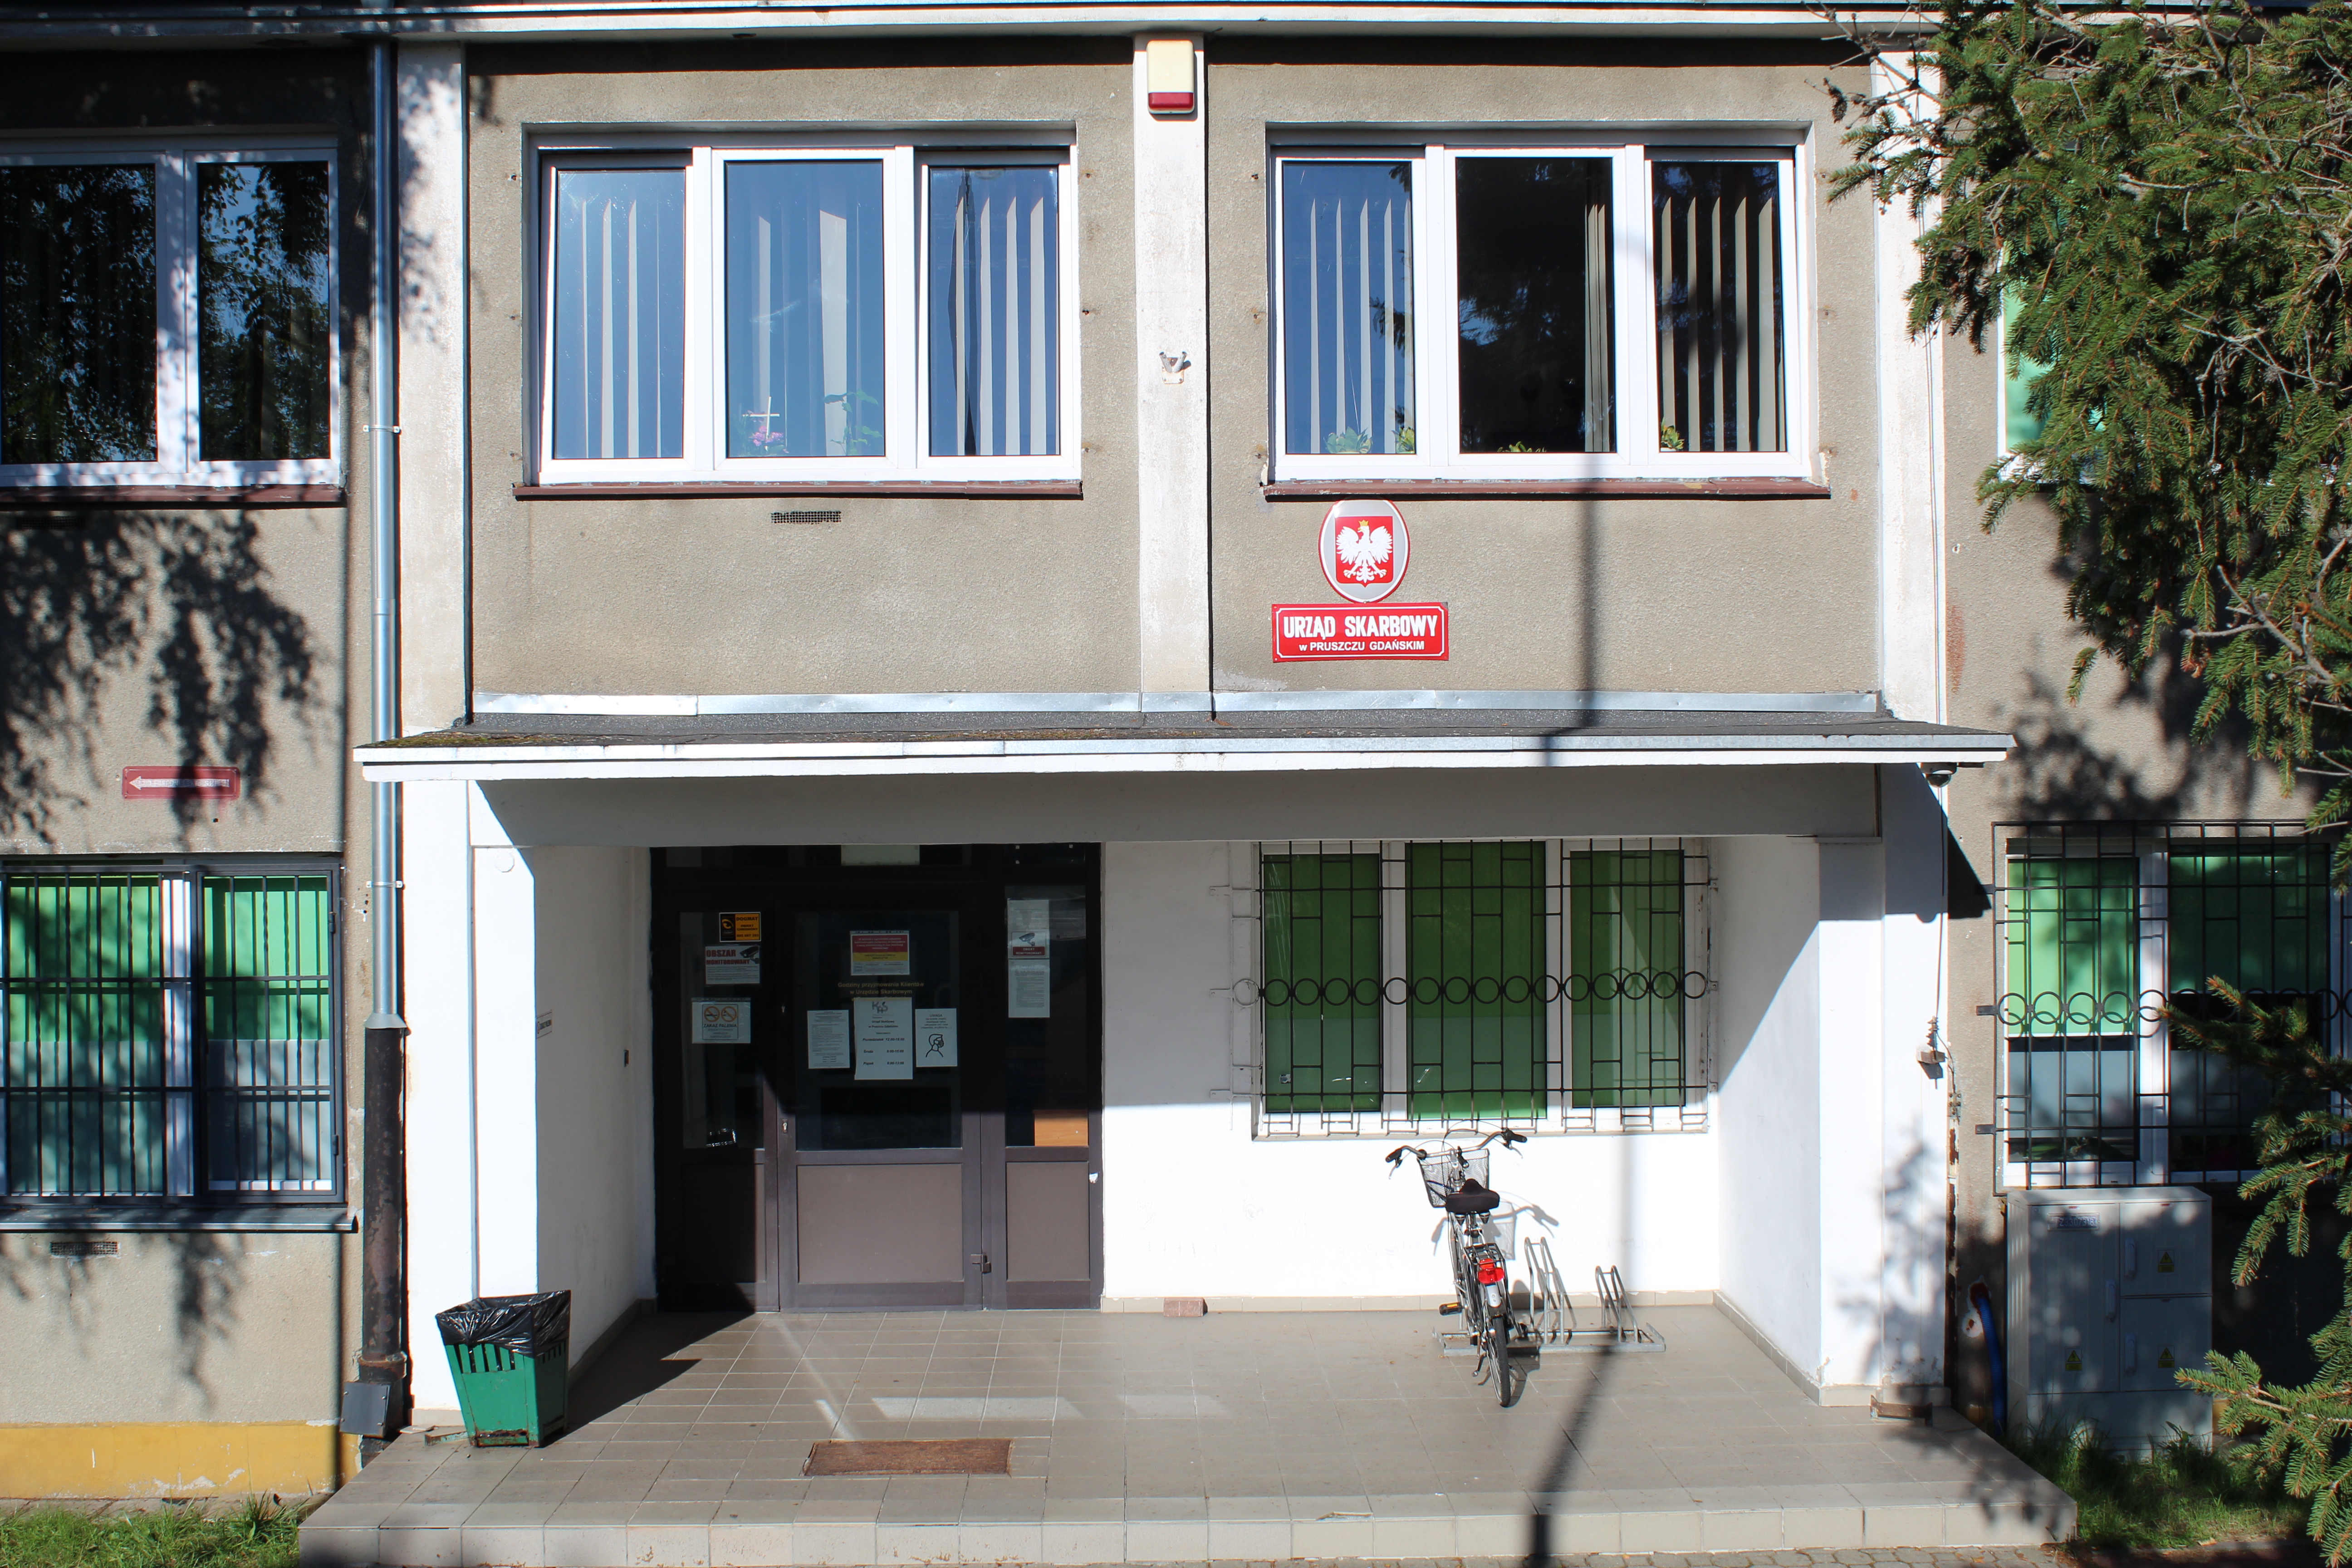 Wejście do budynku, w którym znajduje się siedziba Urzędu Skarbowego w Pruszczu Gdańskim